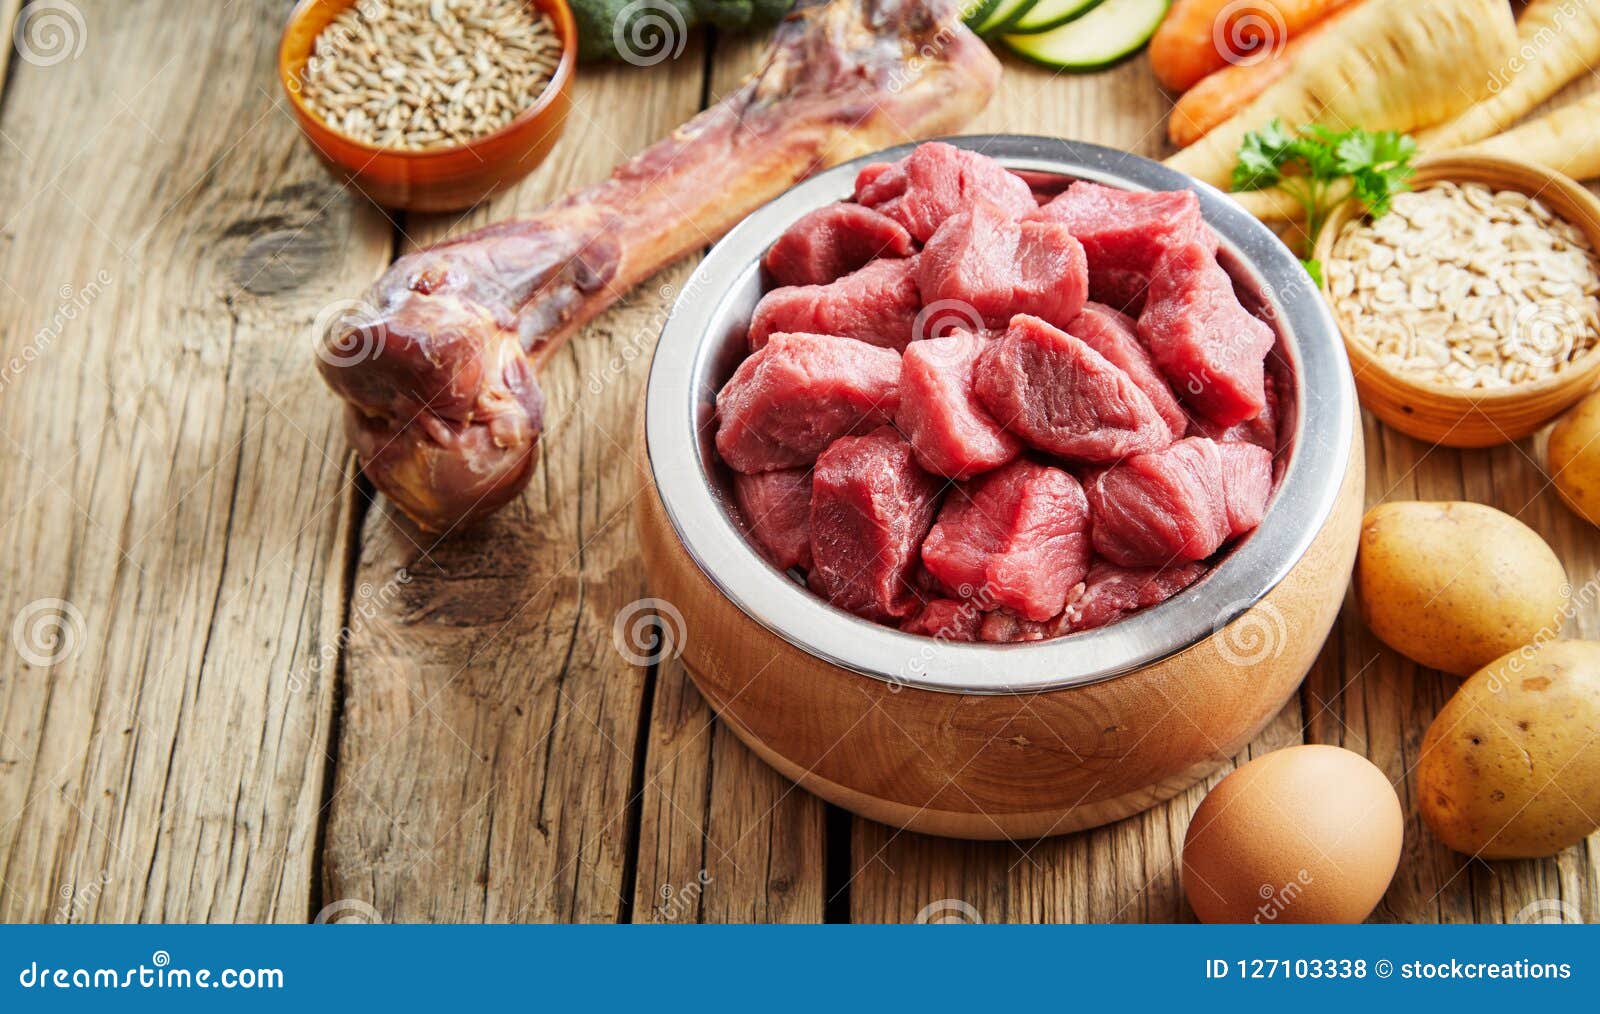 Meat корм для собак. Миска с мясом. Натуральное питание. Сырое мясо на белом фоне. Еда для собак натуралка.